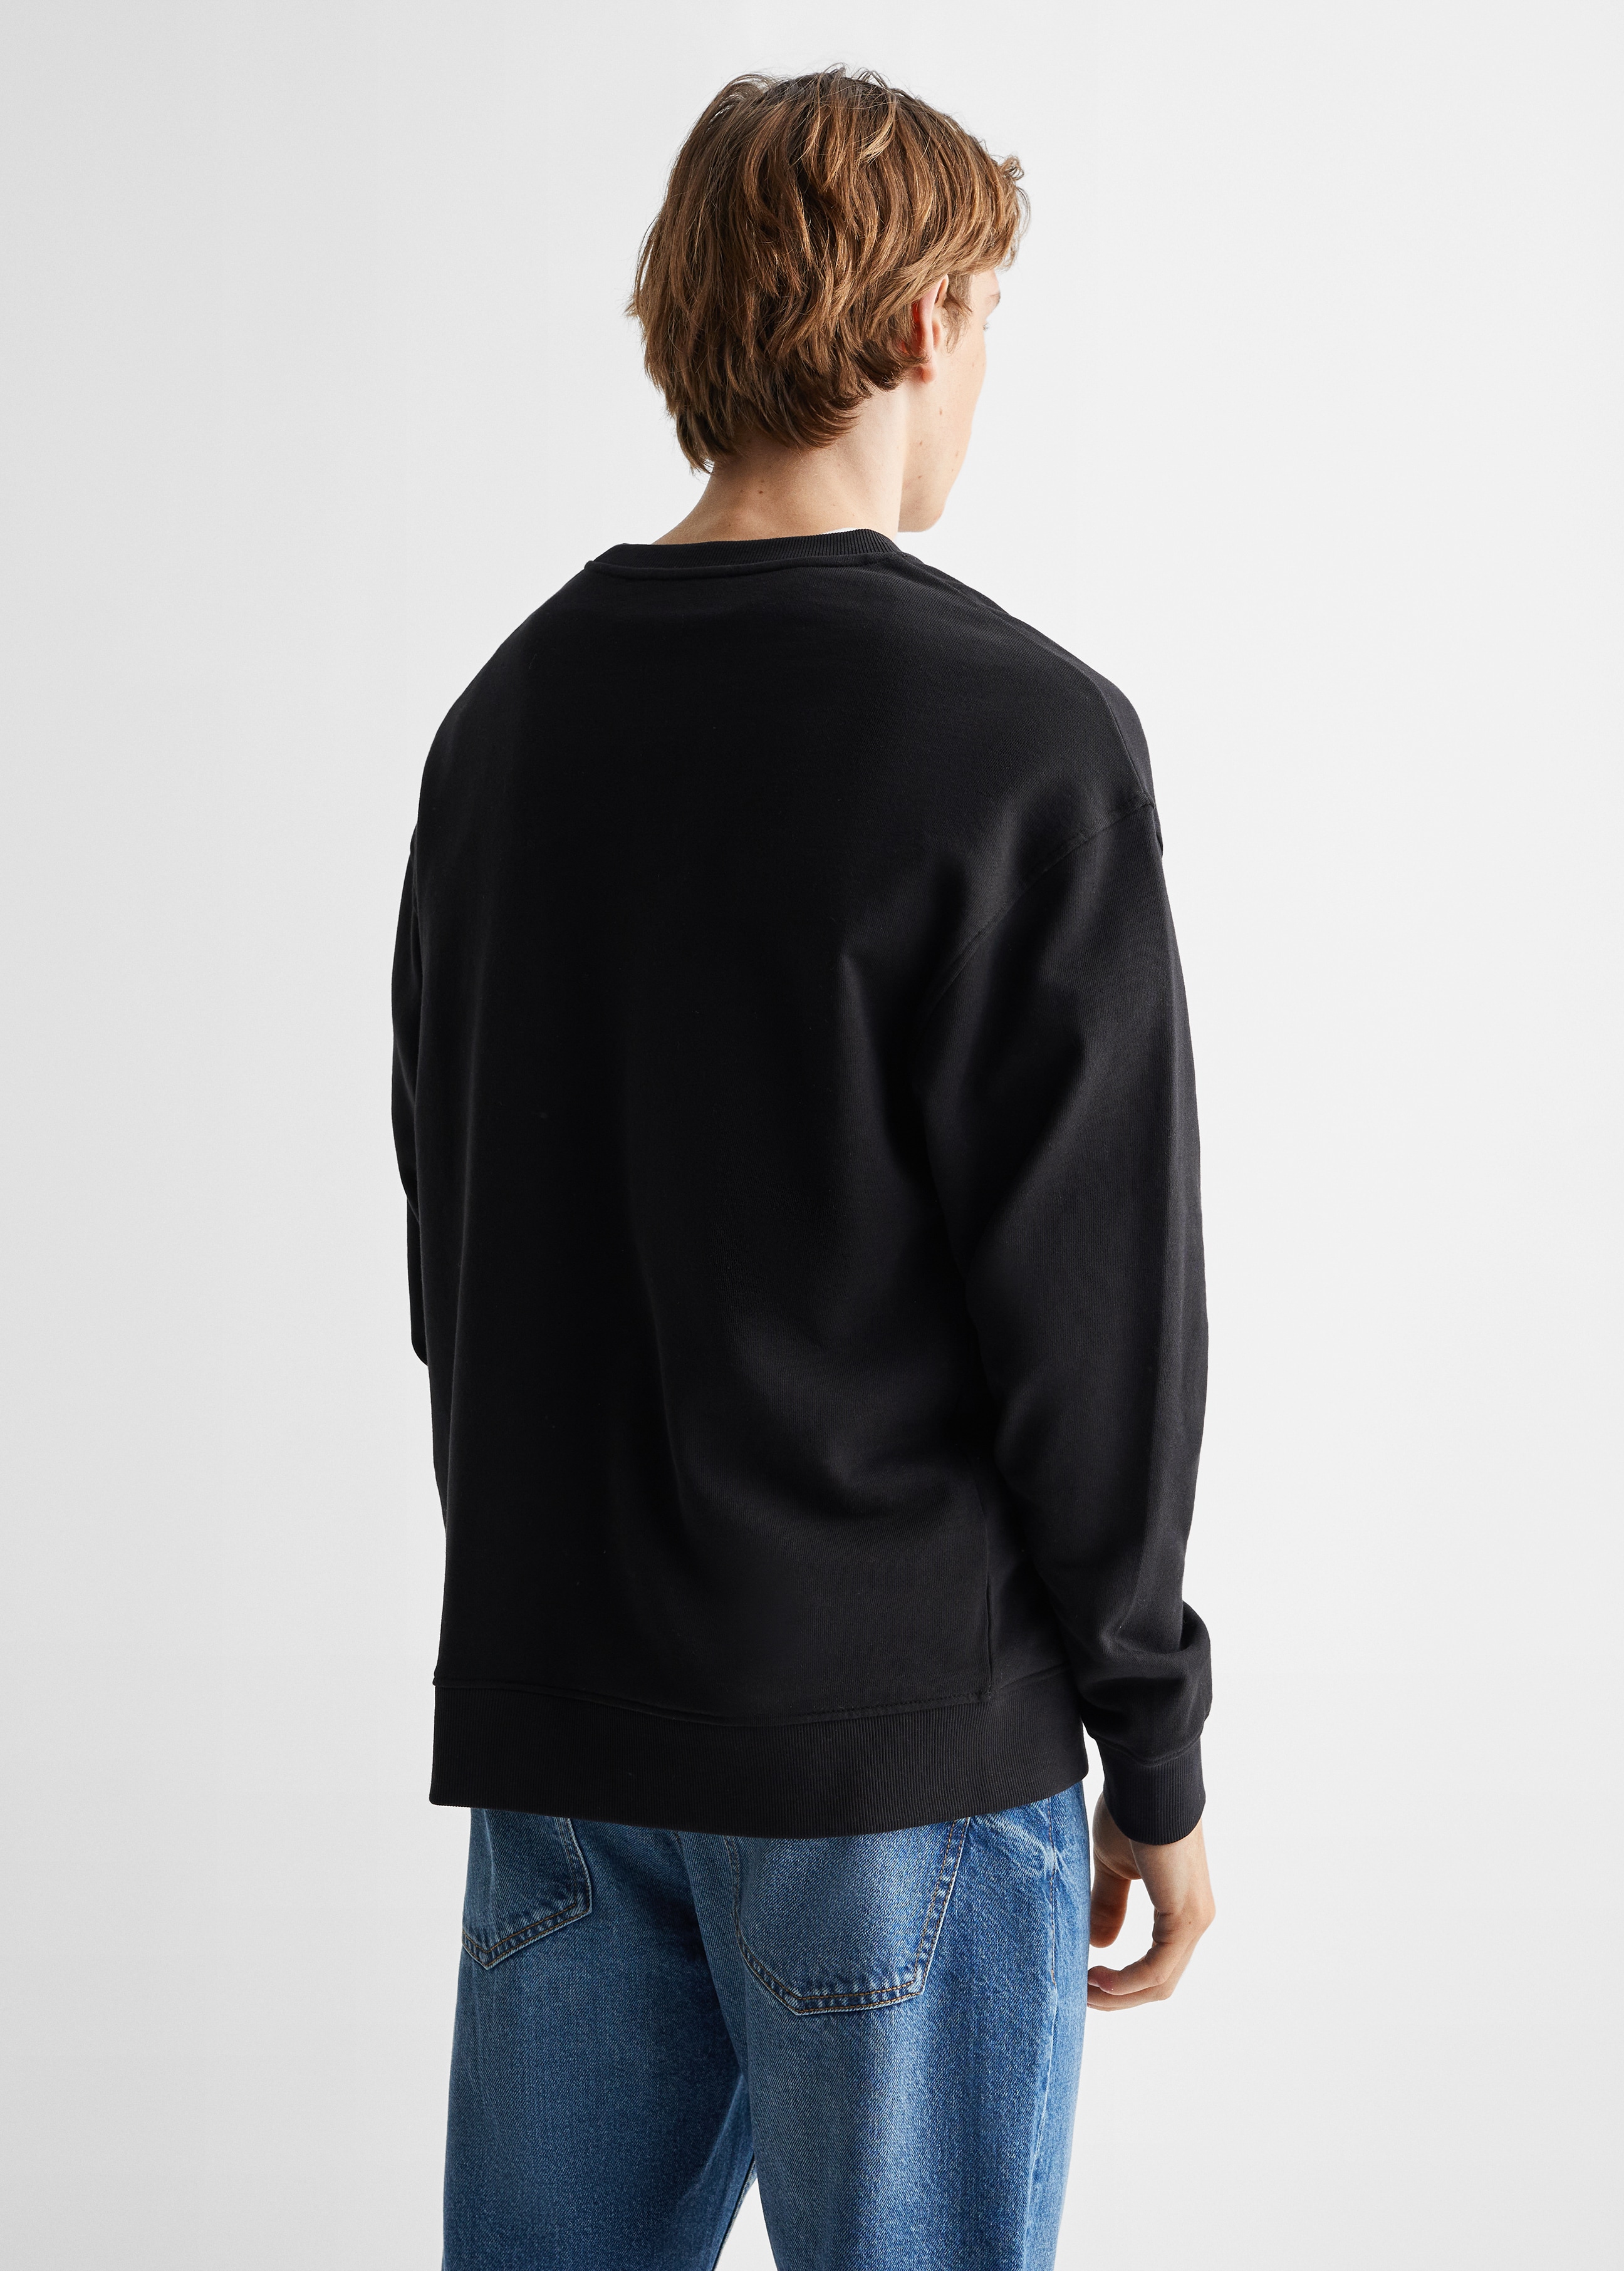 Baumwoll-Sweatshirt mit Aufschrift - Rückseite des Artikels